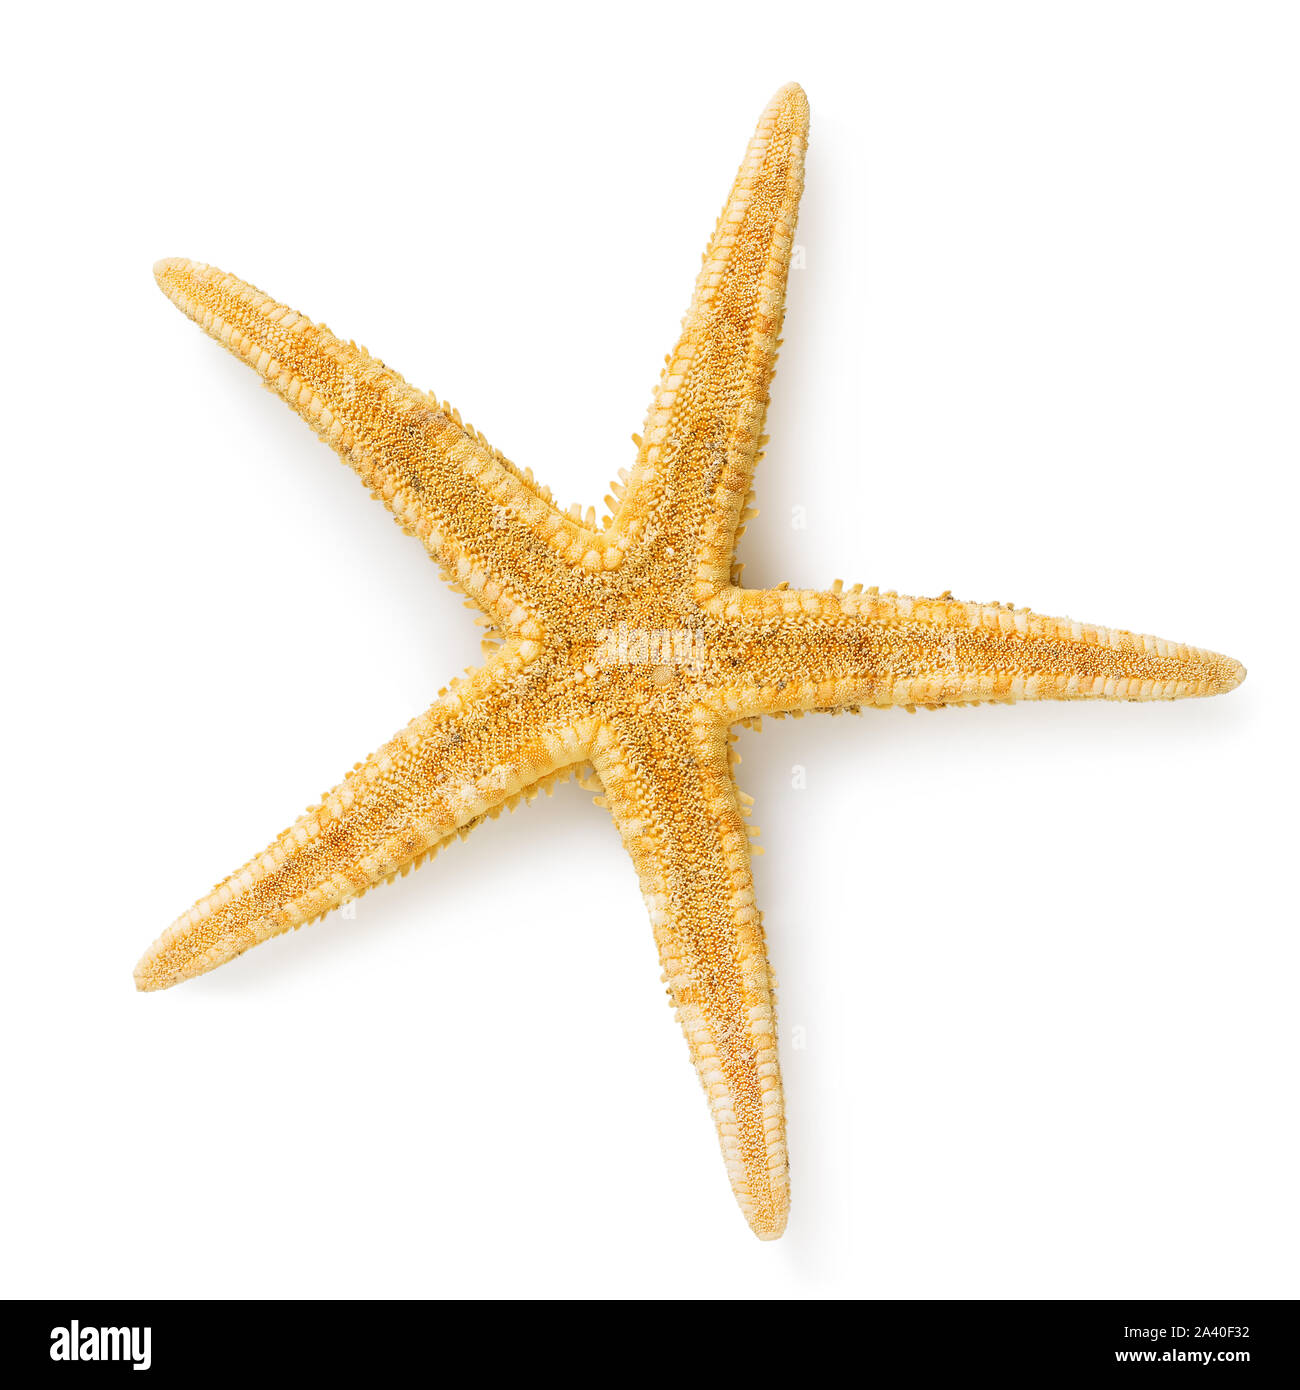 Dekorative starfish isoliert auf einem weißen Hintergrund. Blick auf der Unterseite der Schale. Foto durch stacking Methode genommen Stockfoto